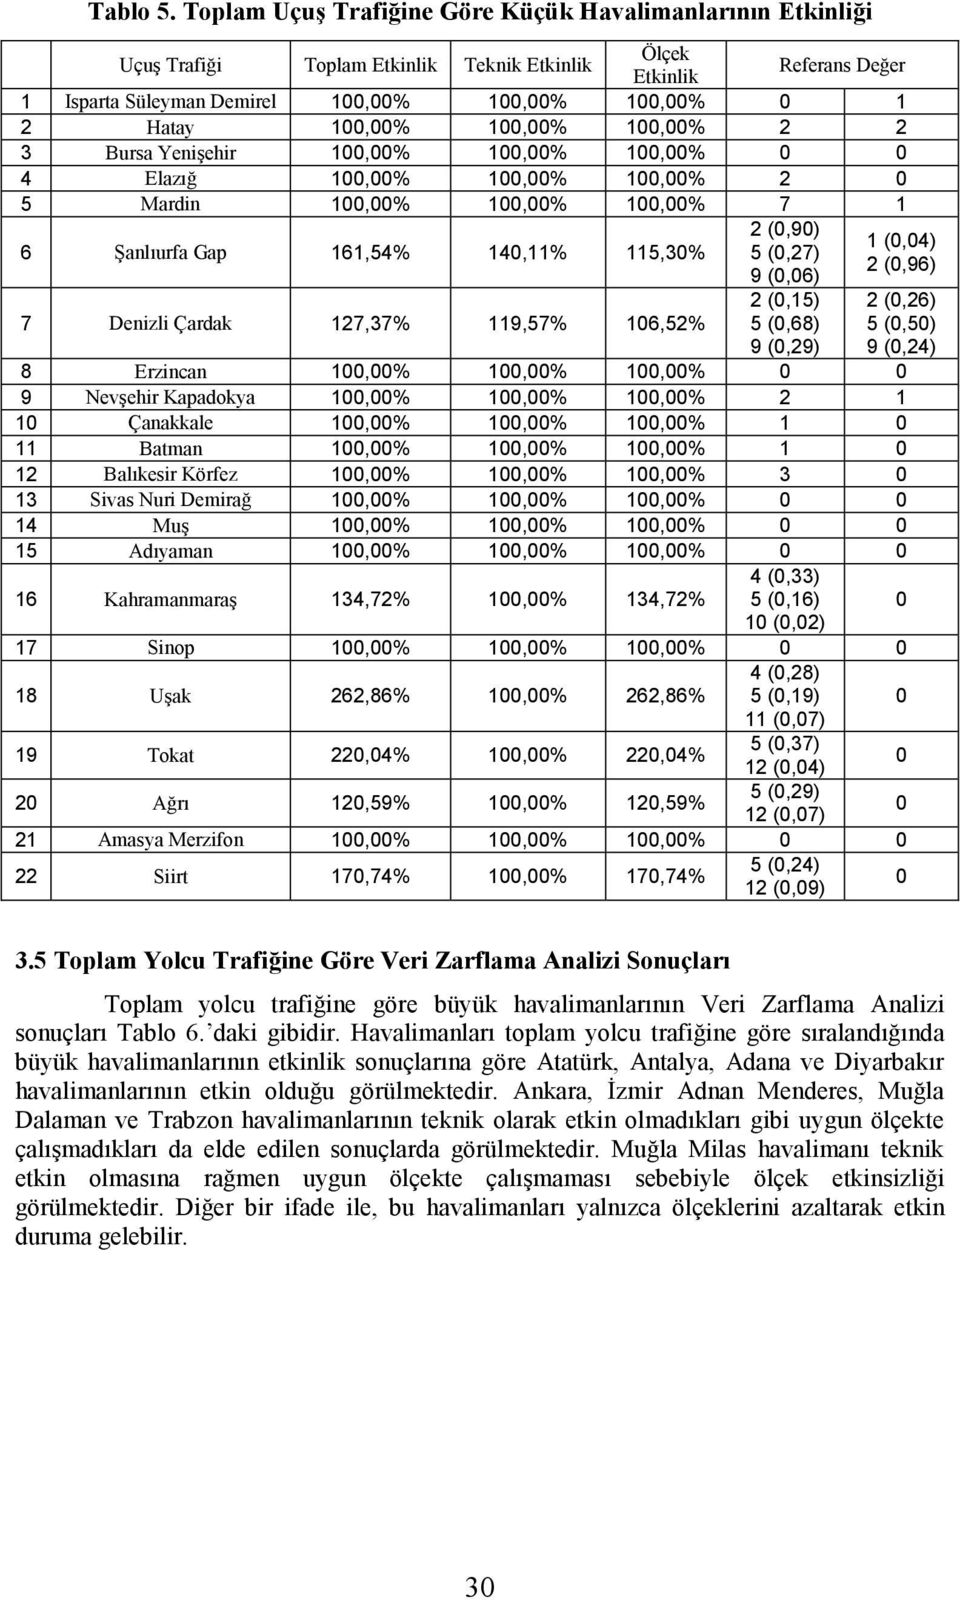 3 Bursa Yenişehir 1,% 1,% 1,% 4 Elazığ 1,% 1,% 1,% 2 5 Mardin 1,% 1,% 1,% 7 1 6 Şanlıurfa Gap 161,54% 14,11% 115,3% 2 (,9) 5 (,27) 9 (,6) 7 Denizli Çardak 127,37% 119,57% 16,52% 2 (,15) 5 (,68) 9